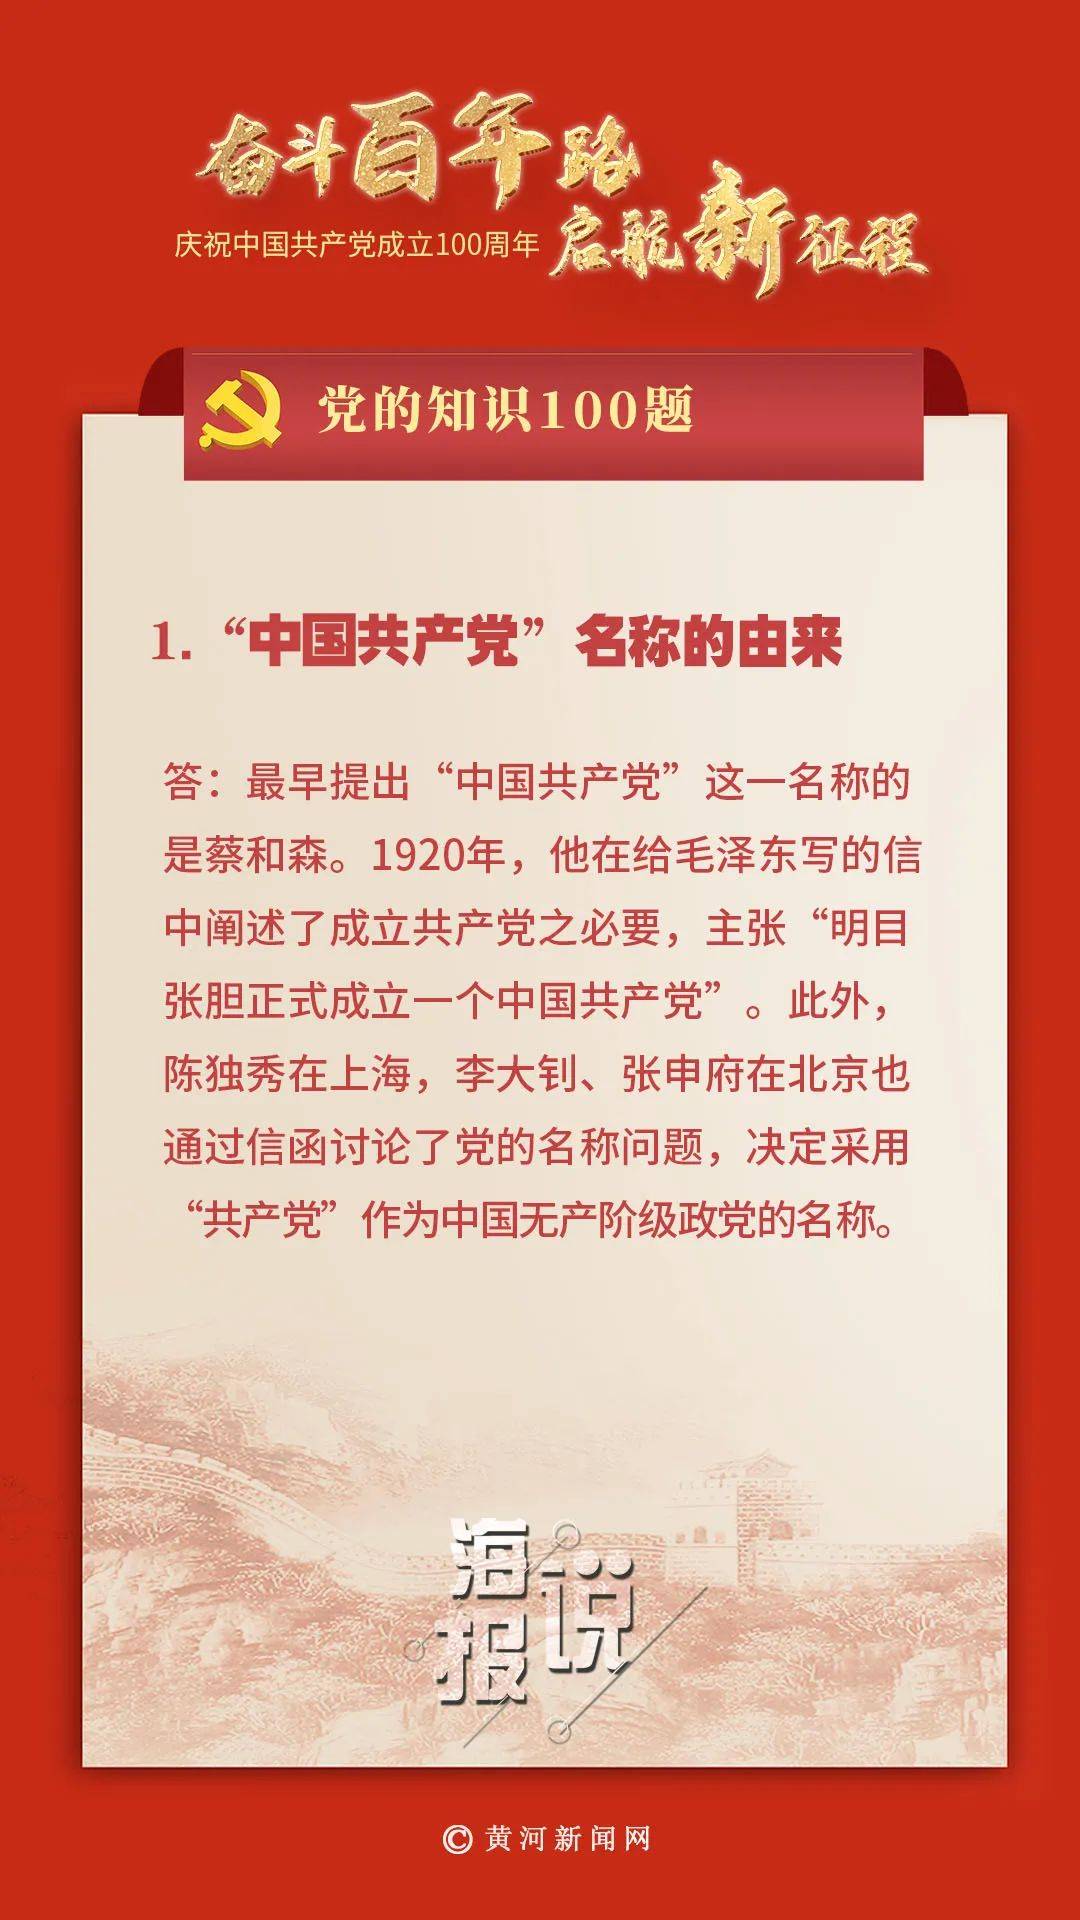 党的知识100题:"中国共产党"名称的由来